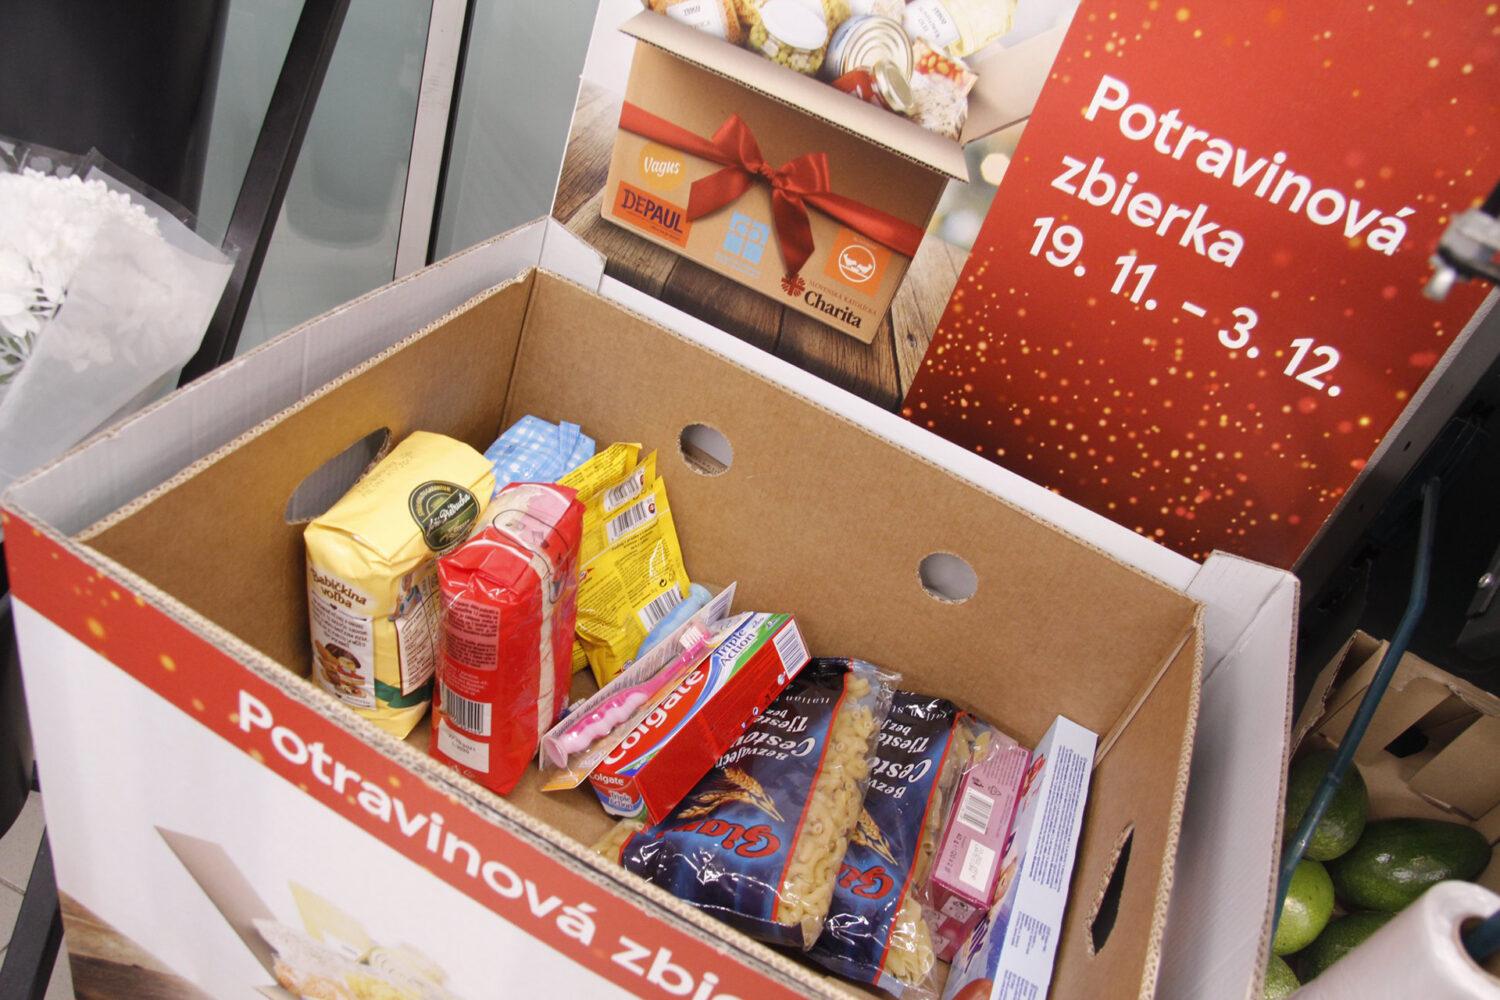 Vianočná potravinová zbierka pomohla ľuďom v núdzi, vyzbieralo sa 100 ton potravín